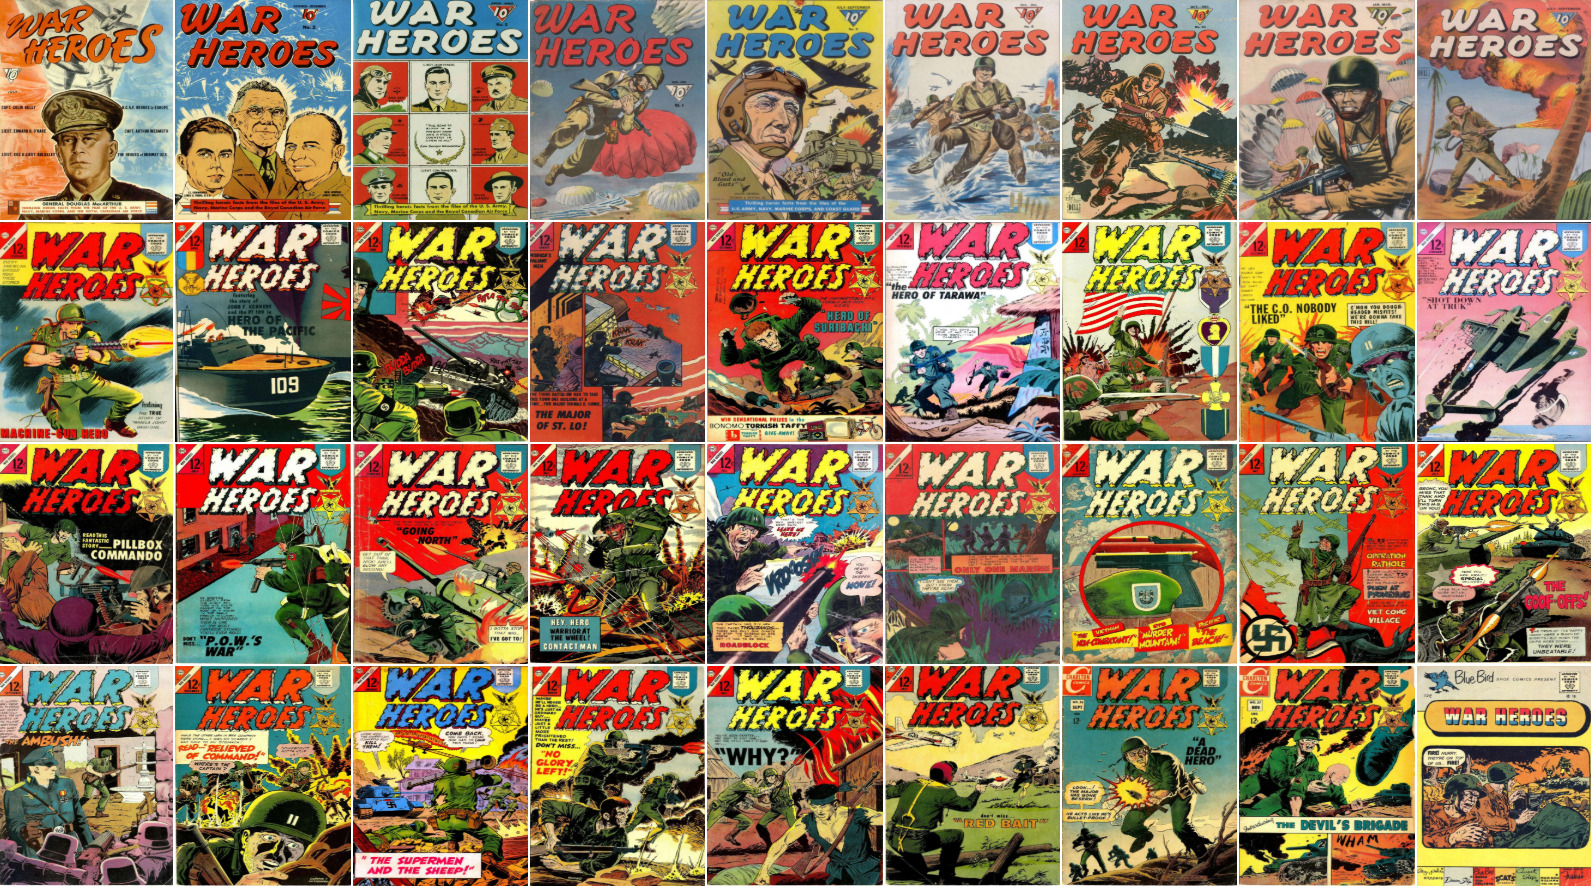 1942 - 1967 War Heroes Comic Book Package - 36 eBooks on CD